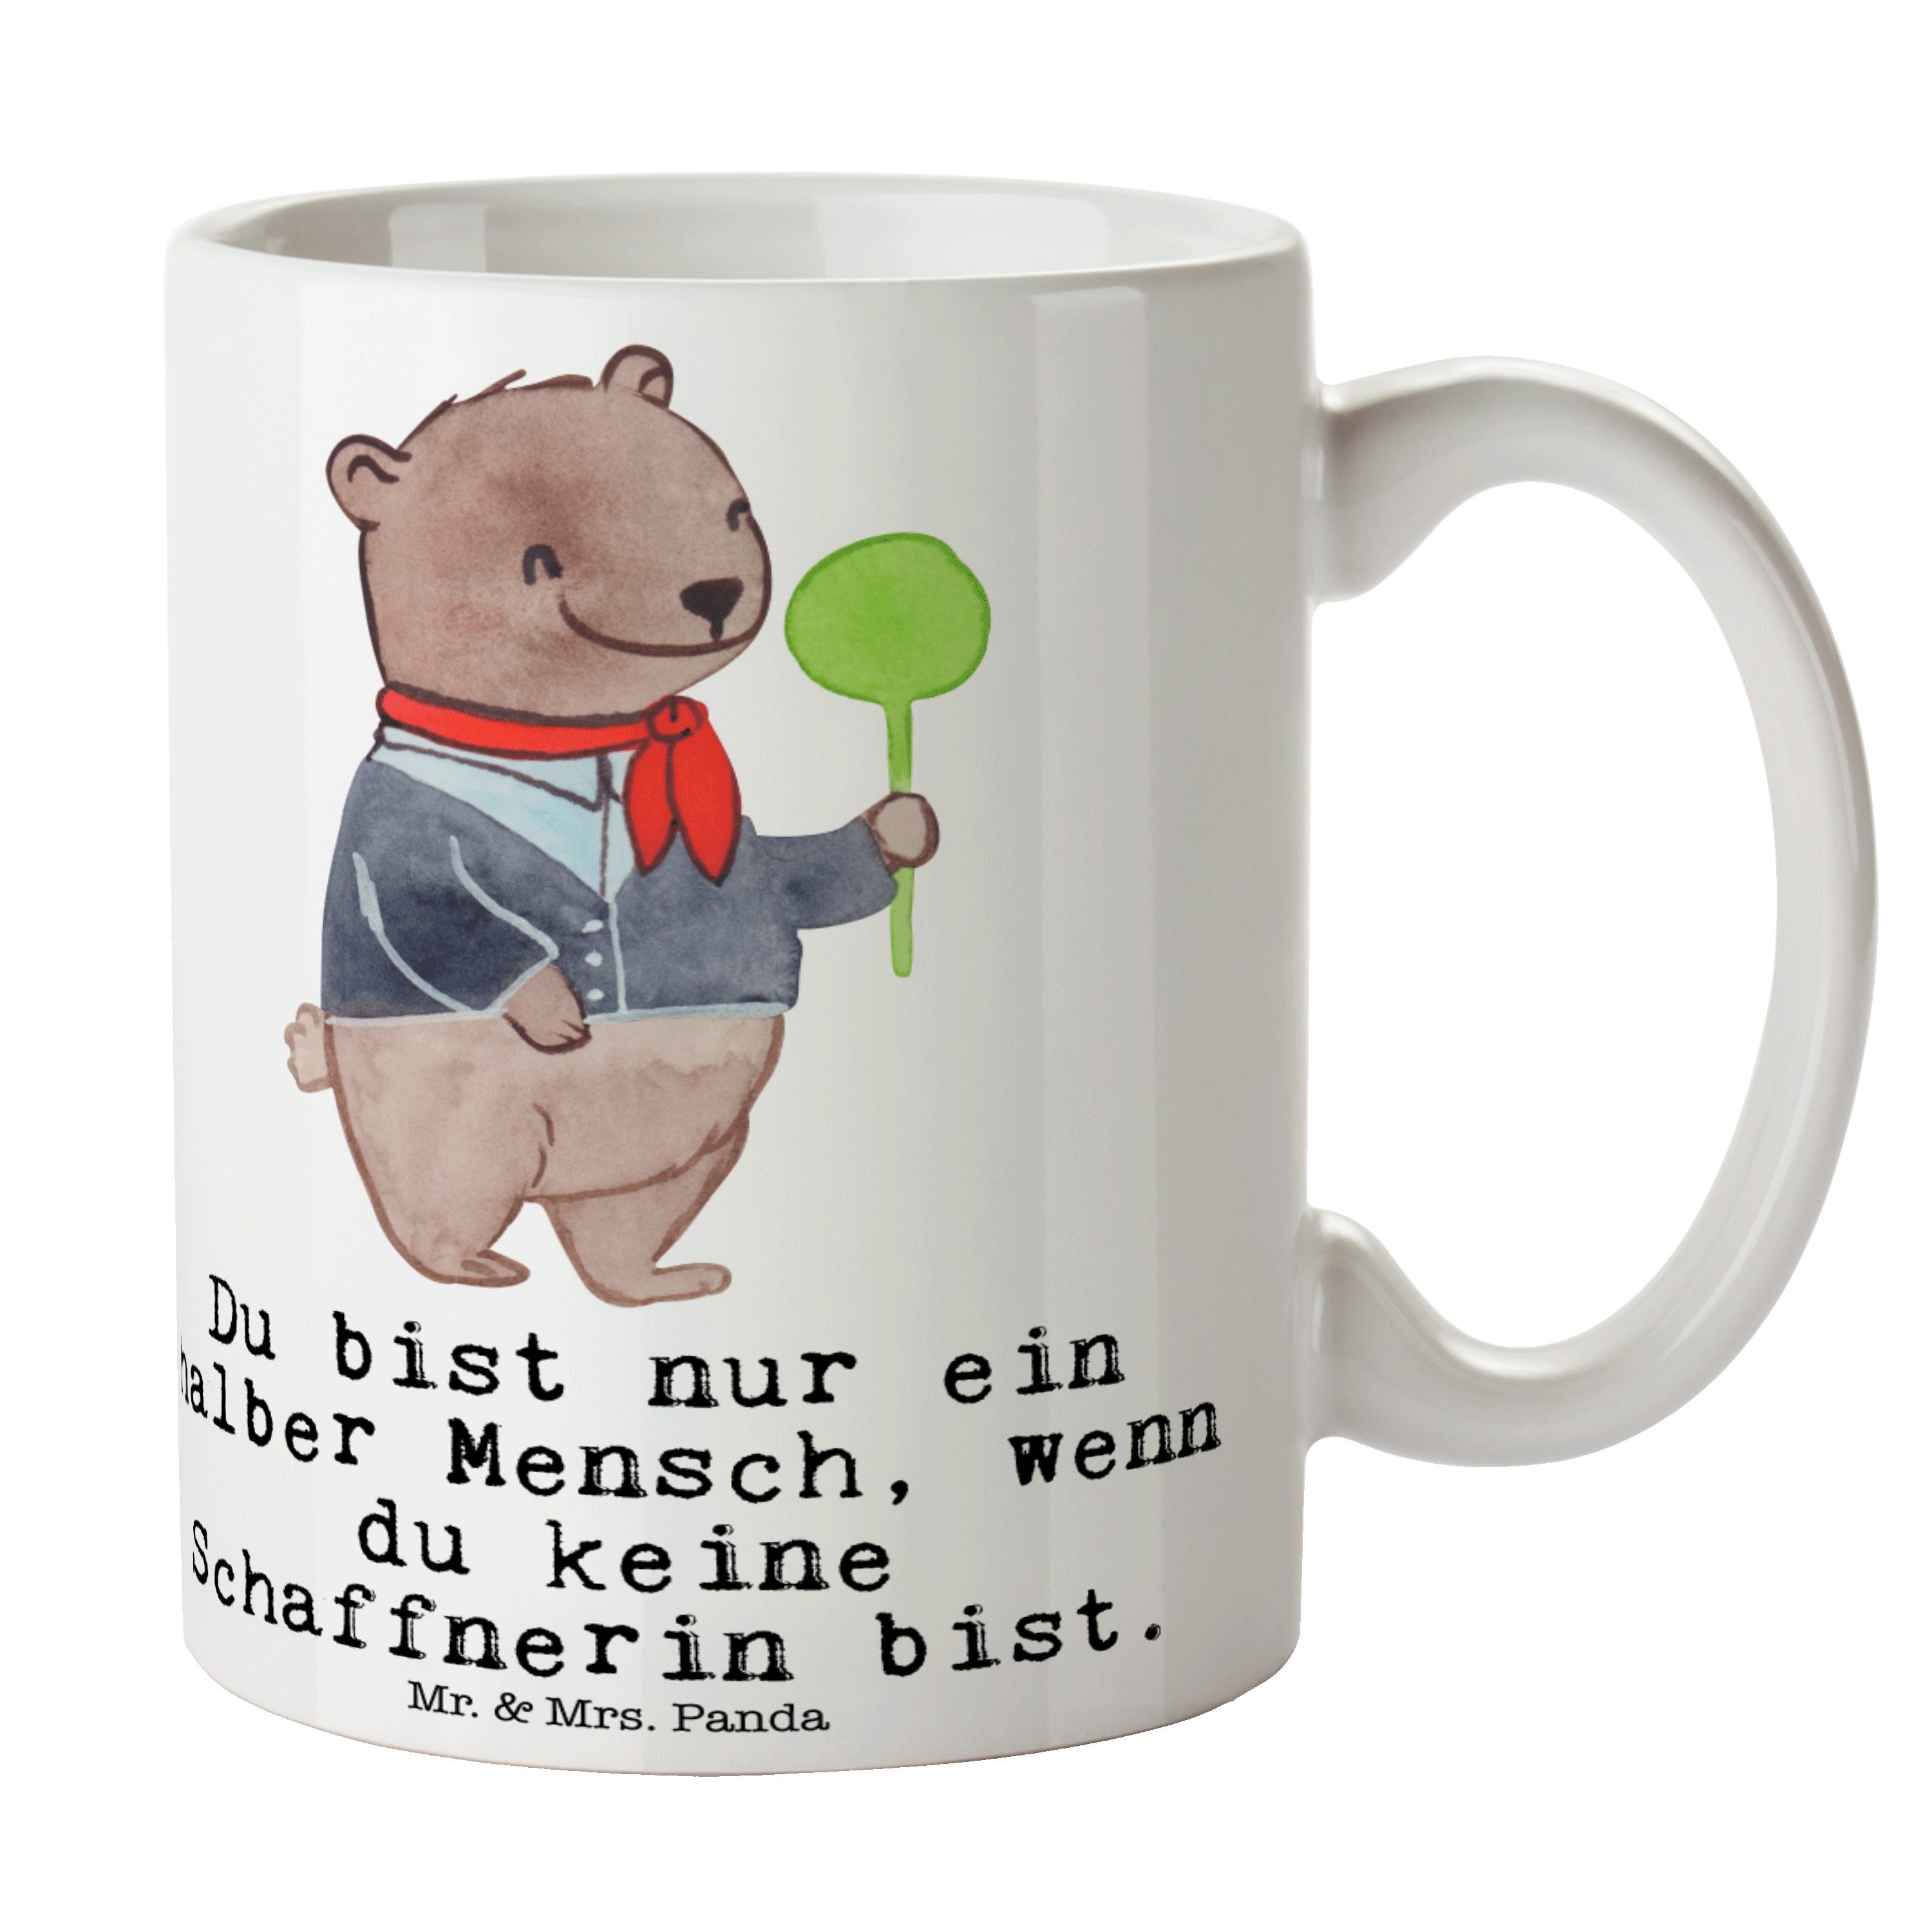 Mr. & Mrs. Panda Tasse Schaffnerin mit Herz - Weiß - Geschenk, Kaffeetasse, Keramiktasse, Re, Keramik